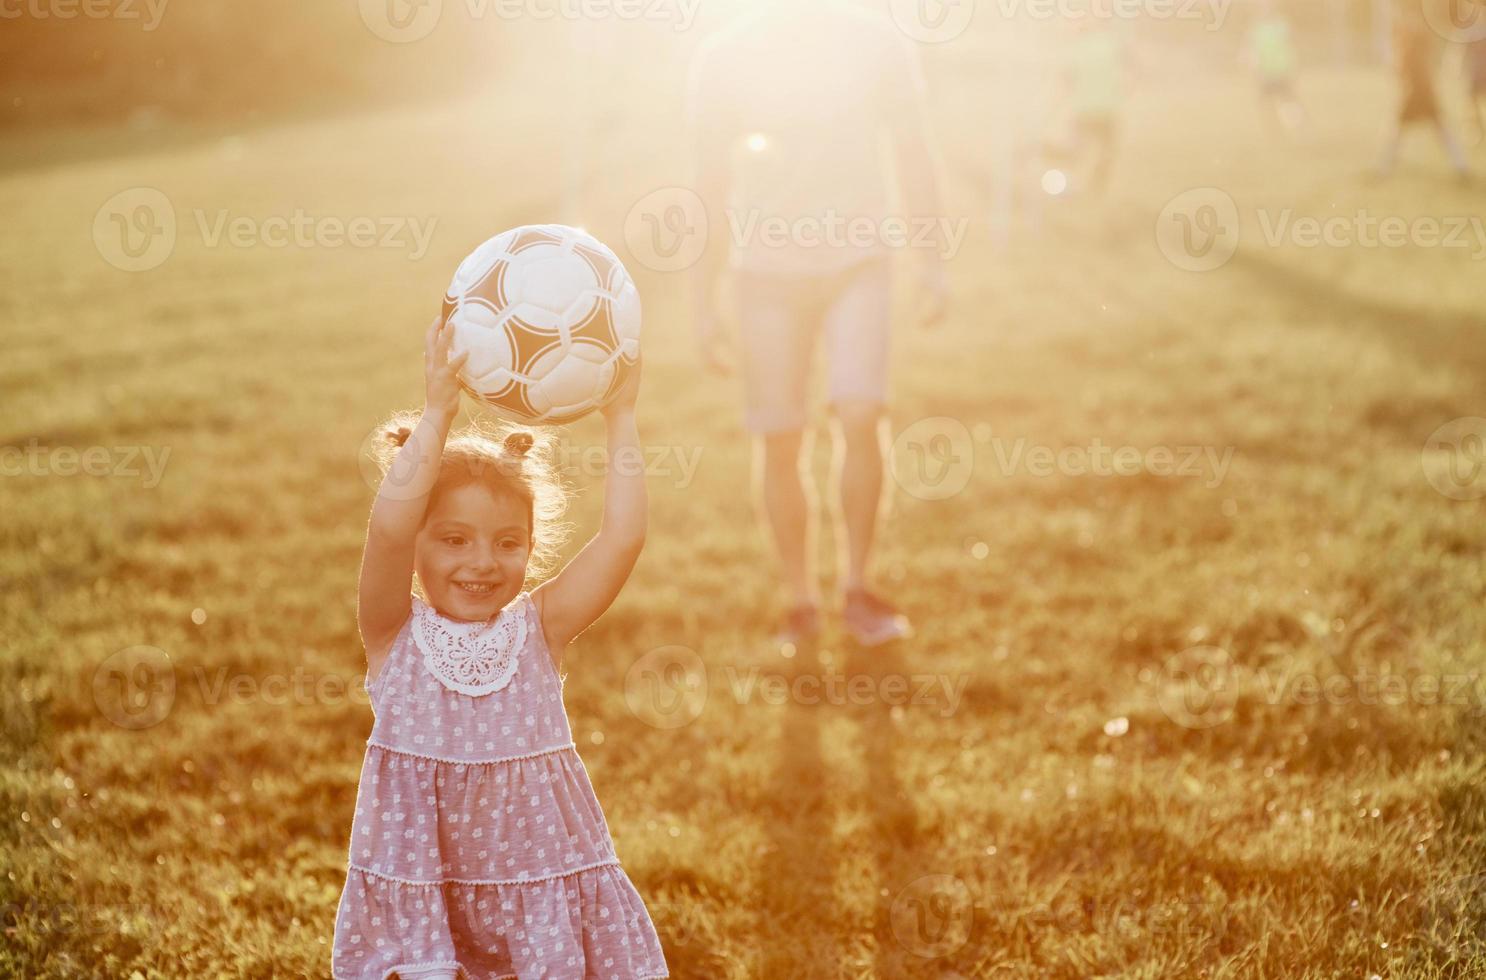 menina bonitinha se apaixona pelo futebol. o hobby do pai pode criar bom humor para dois deles foto